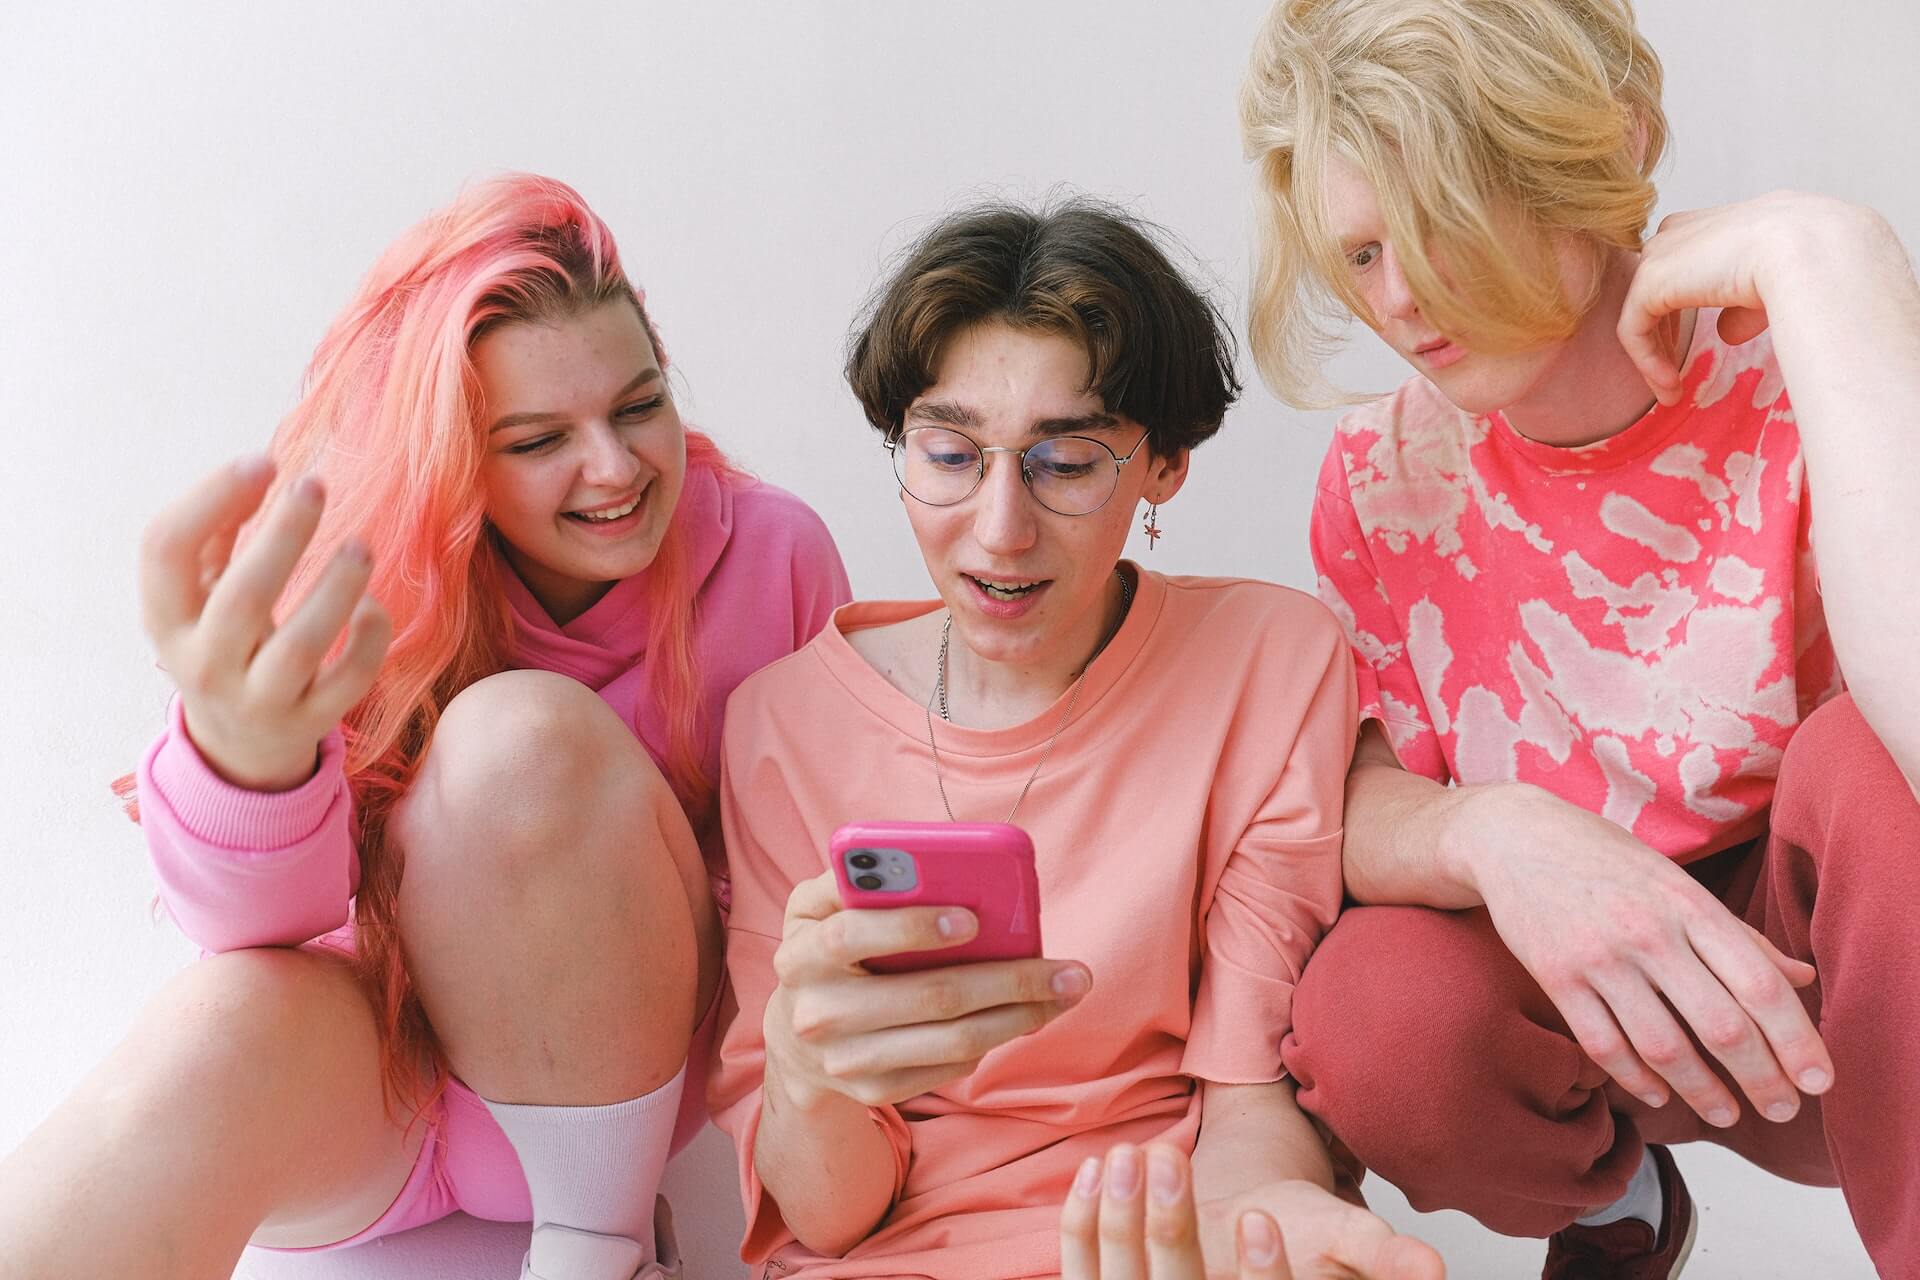 Drei Teenager in pinken Outfits schauen auf ein Handy und wundern sich.